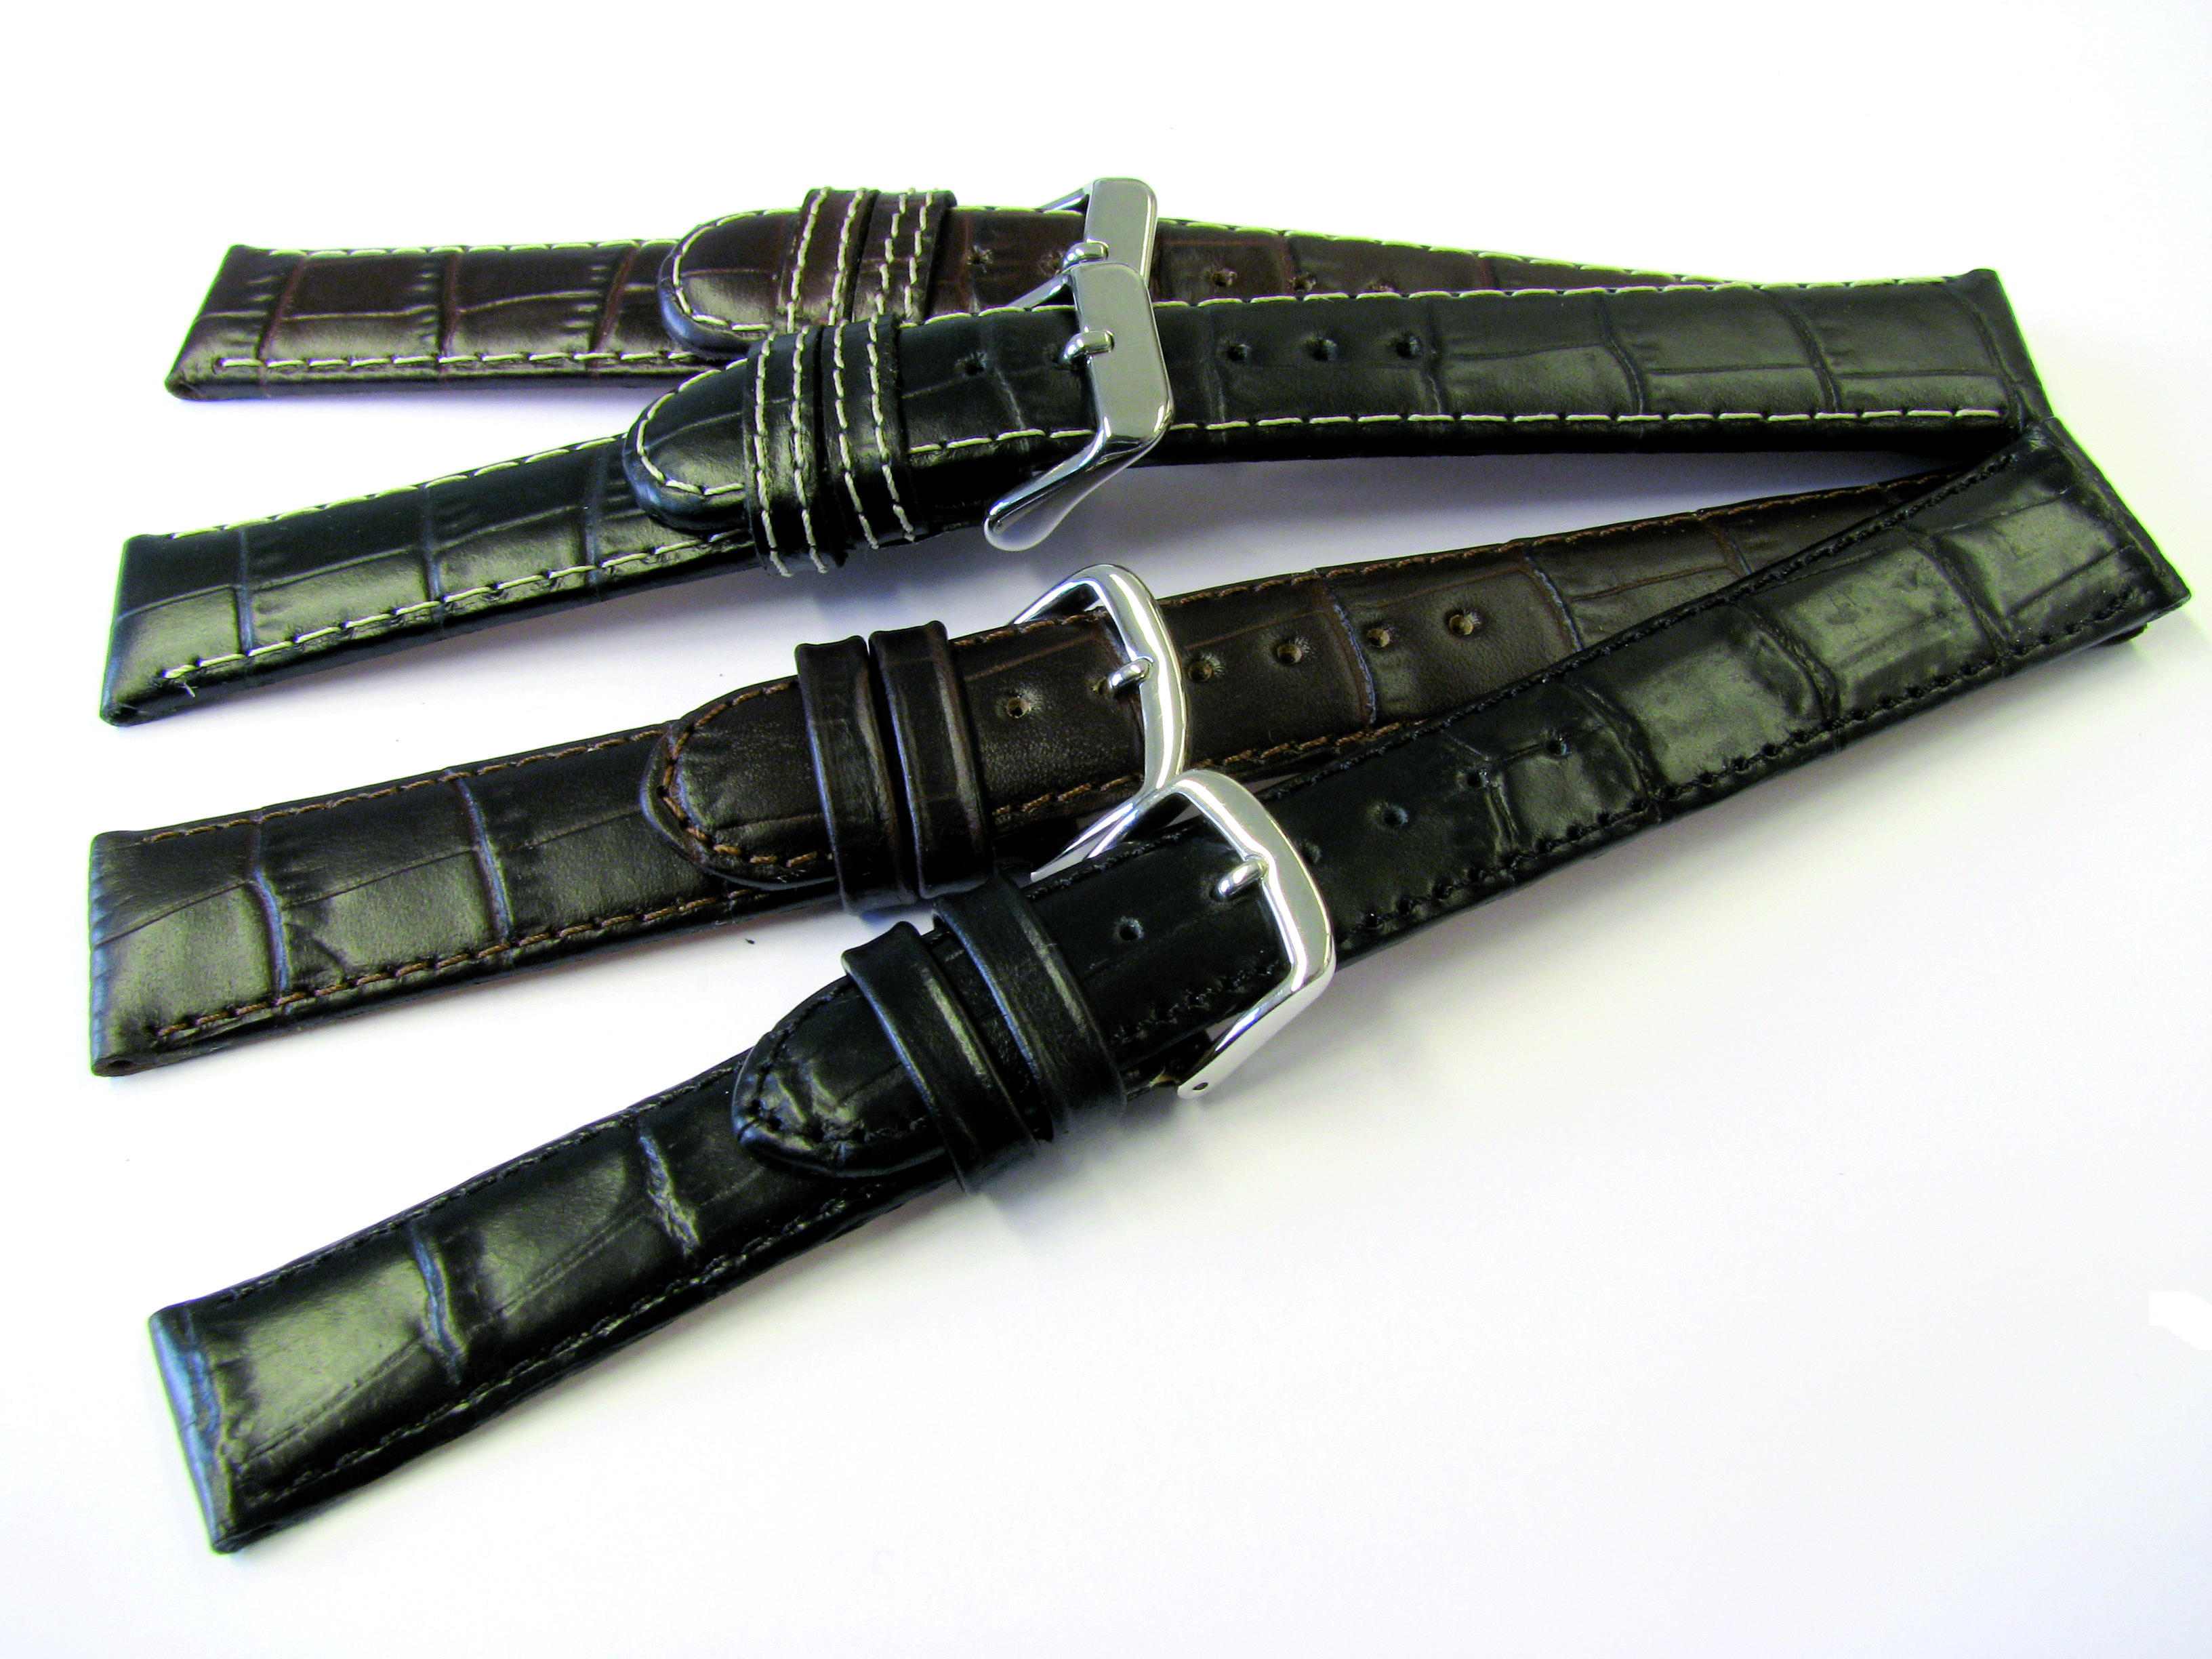 Paski skórzane zestaw 10 sztuk skóra cielęca Louisiana kroko 18-22mm czarny, ciemny brąz ze strukturą kroko